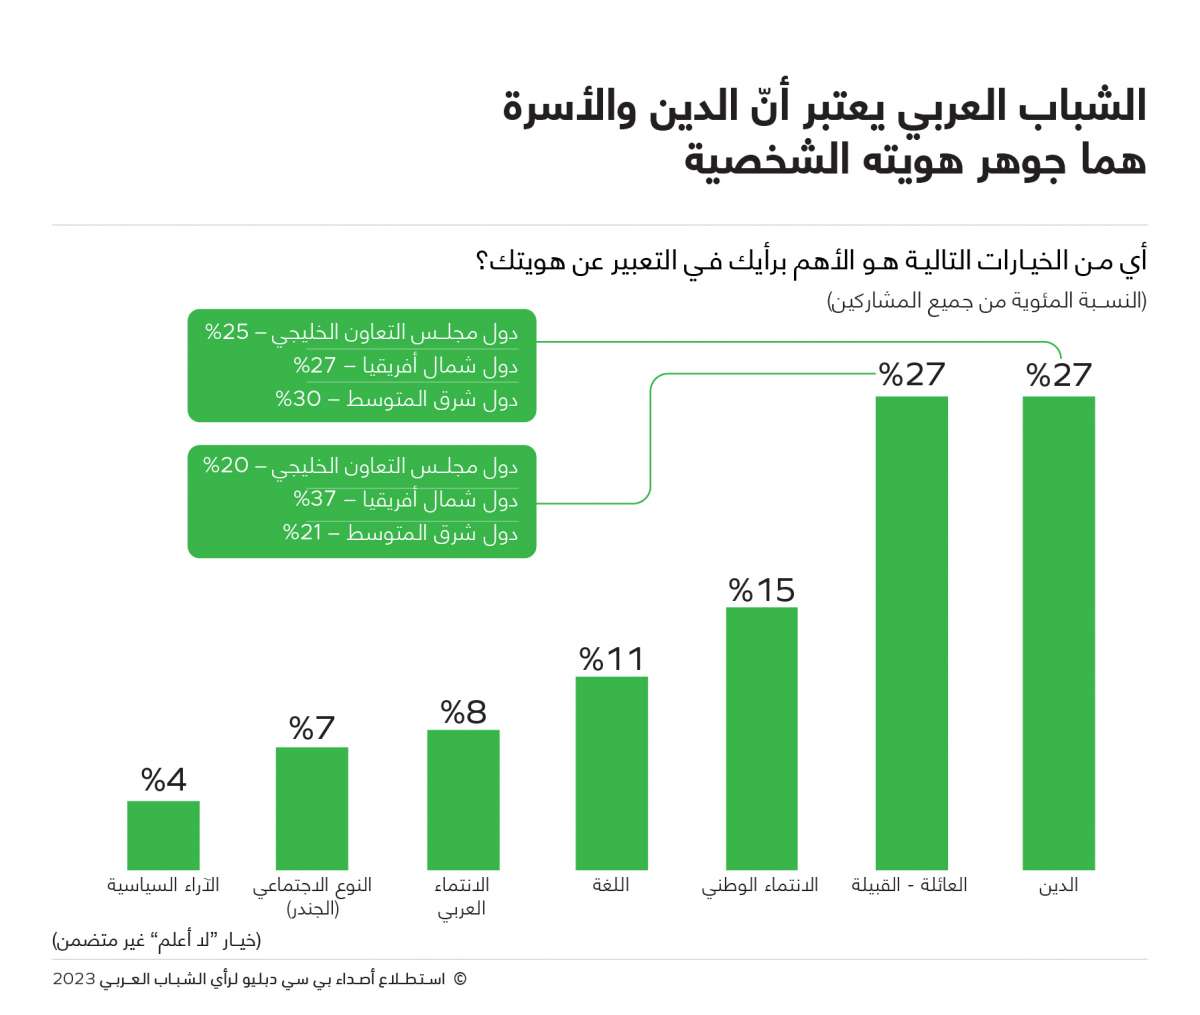 أكثر من نصف الشباب العربي في دول شرق المتوسط وشمال أفريقيا يريدون الهجرة بحثاً عن فرص العمل